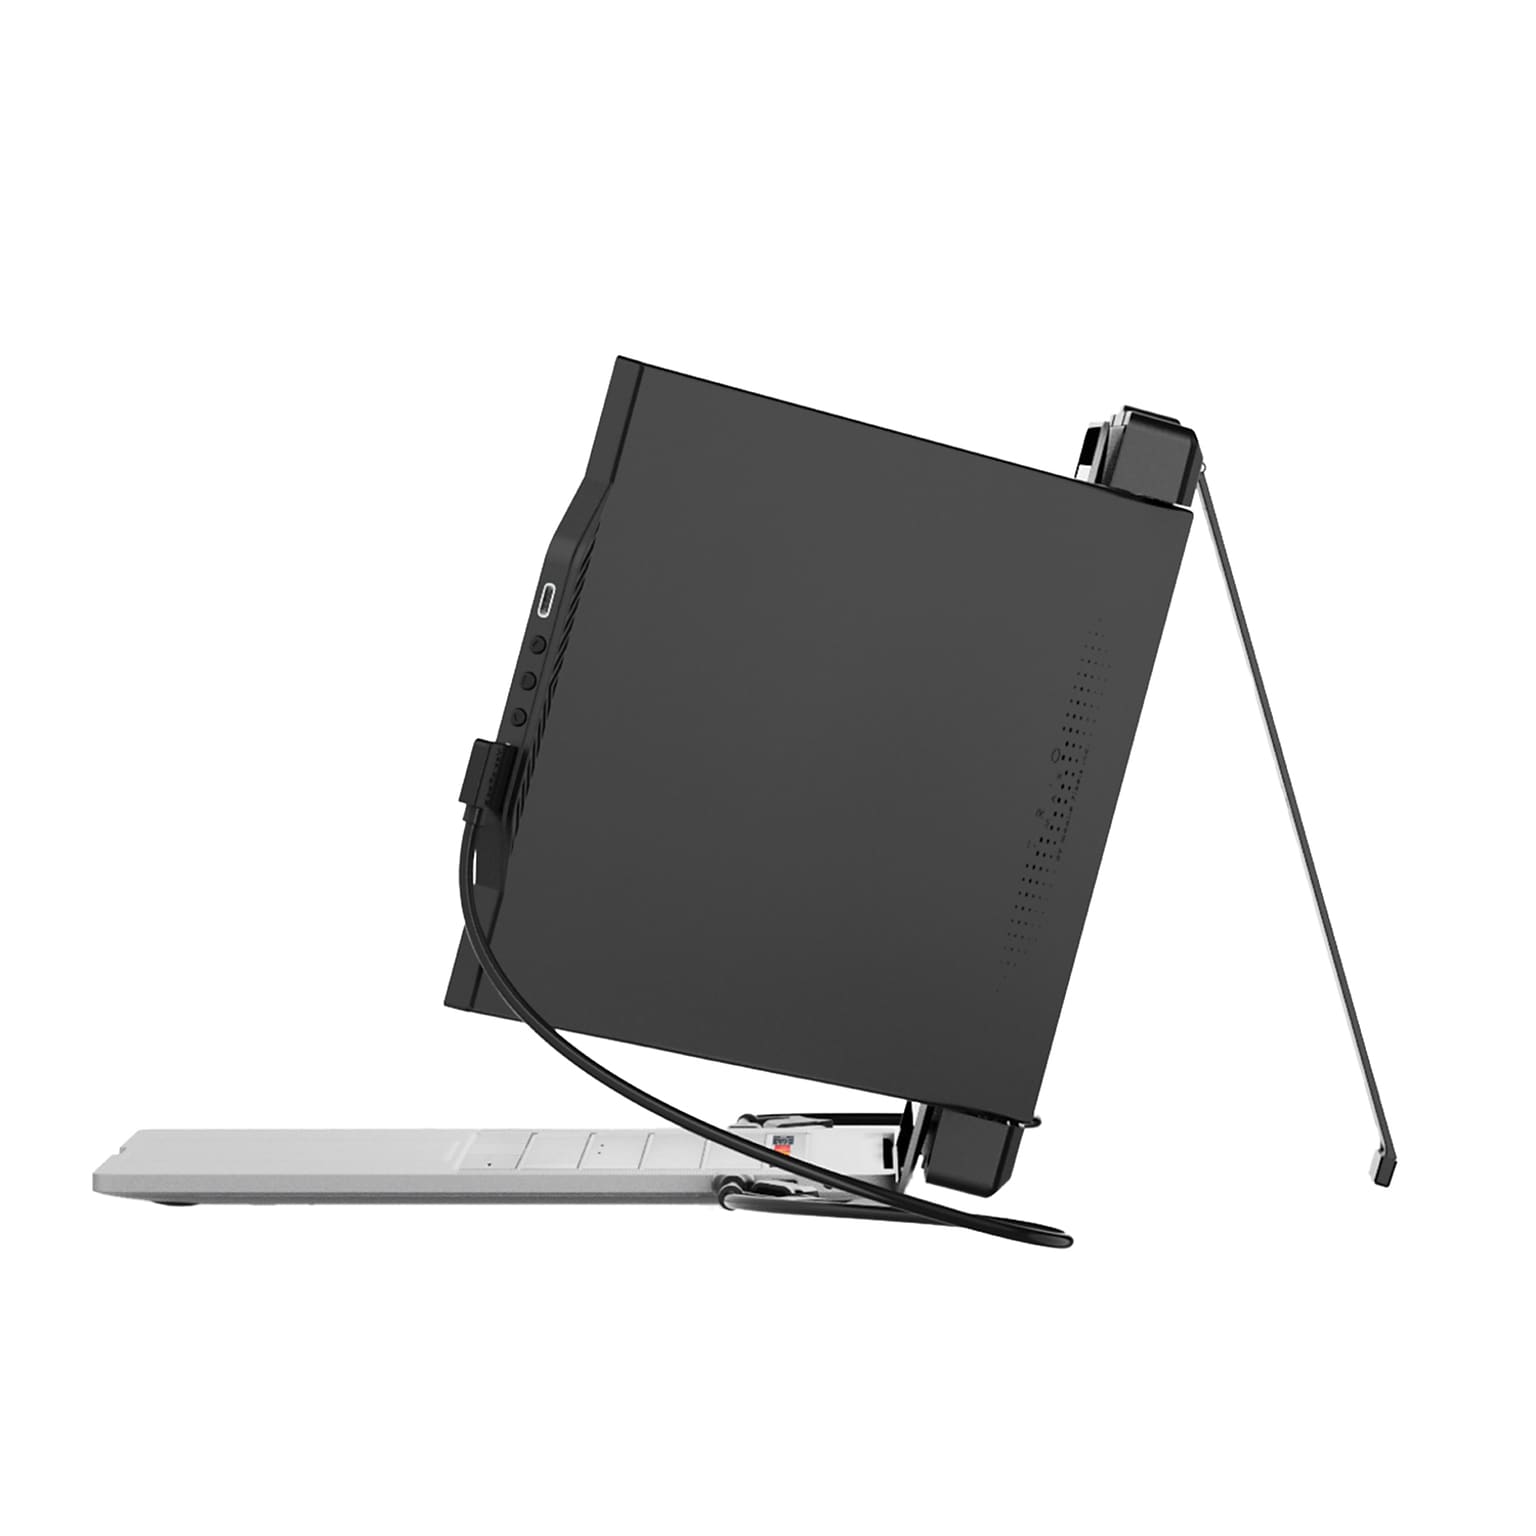 Mobile Pixels Inc. TRIO MAX 2.0 14.1 1080p 60 Hz Portable Laptop Monitors, Black (101-1004P04)